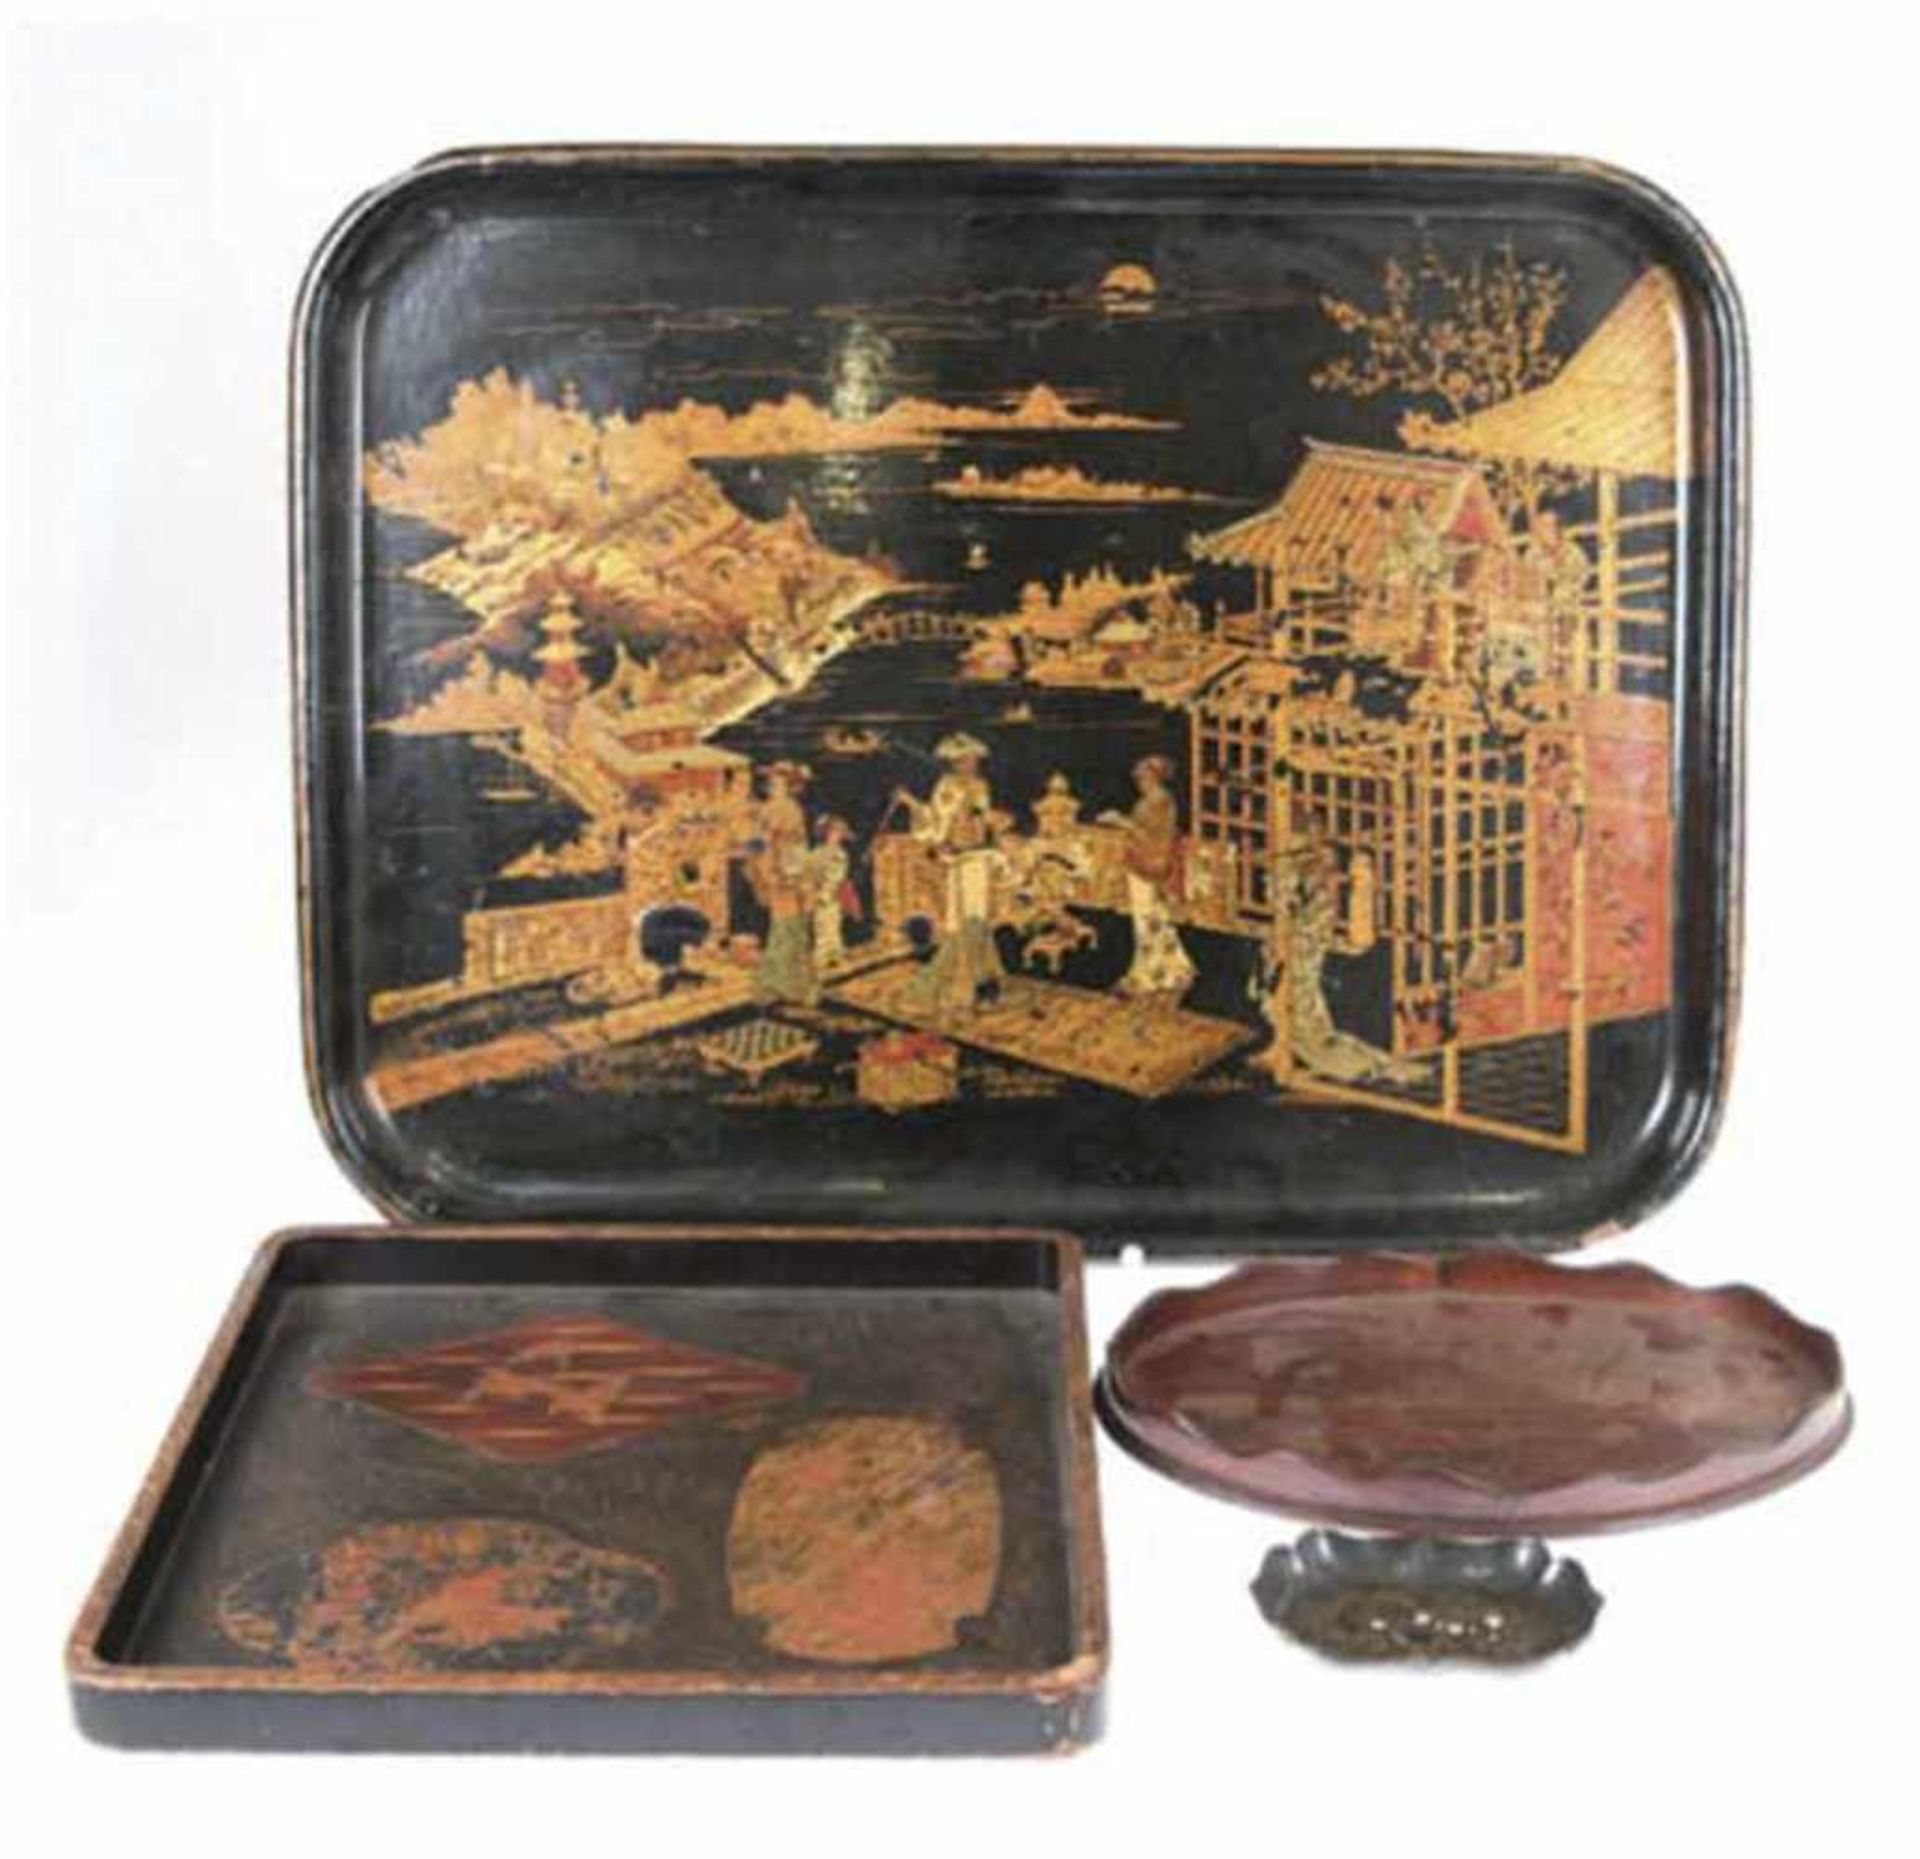 Konv. von 3 Tabletts und Schälchen, Holz, Schwarzlack mit polychromem und Golddekor,ovales Tablett